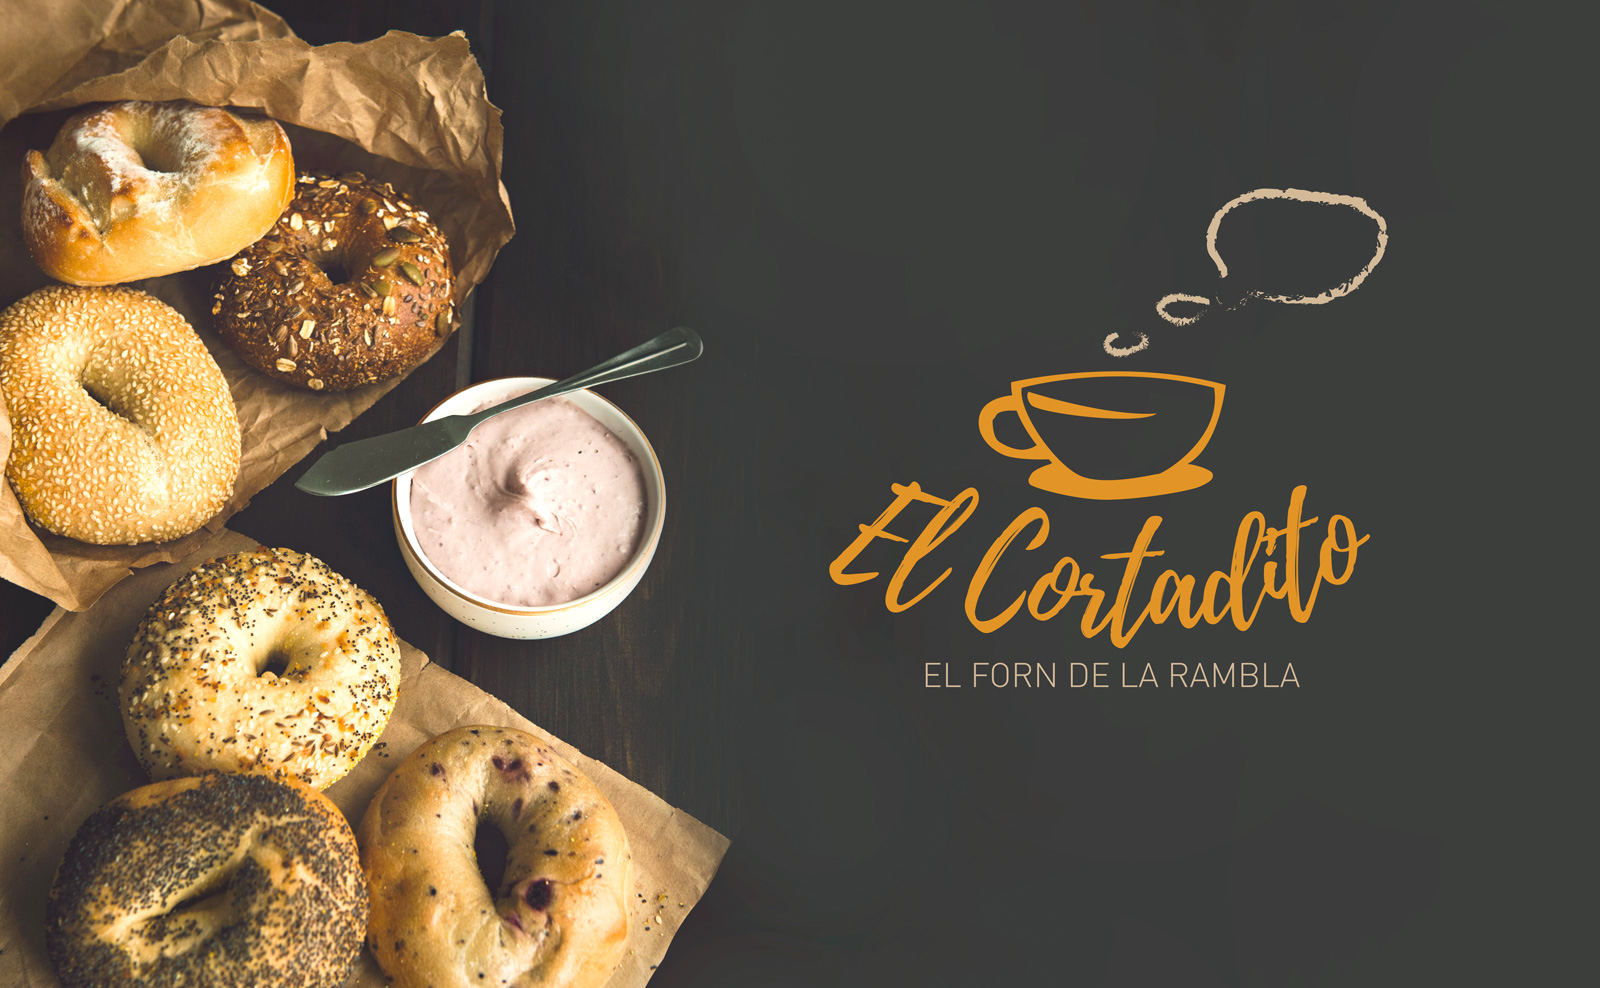 Diseño gráfico y creativo de logo para Cafeteria - Restaurante: El Cortadito